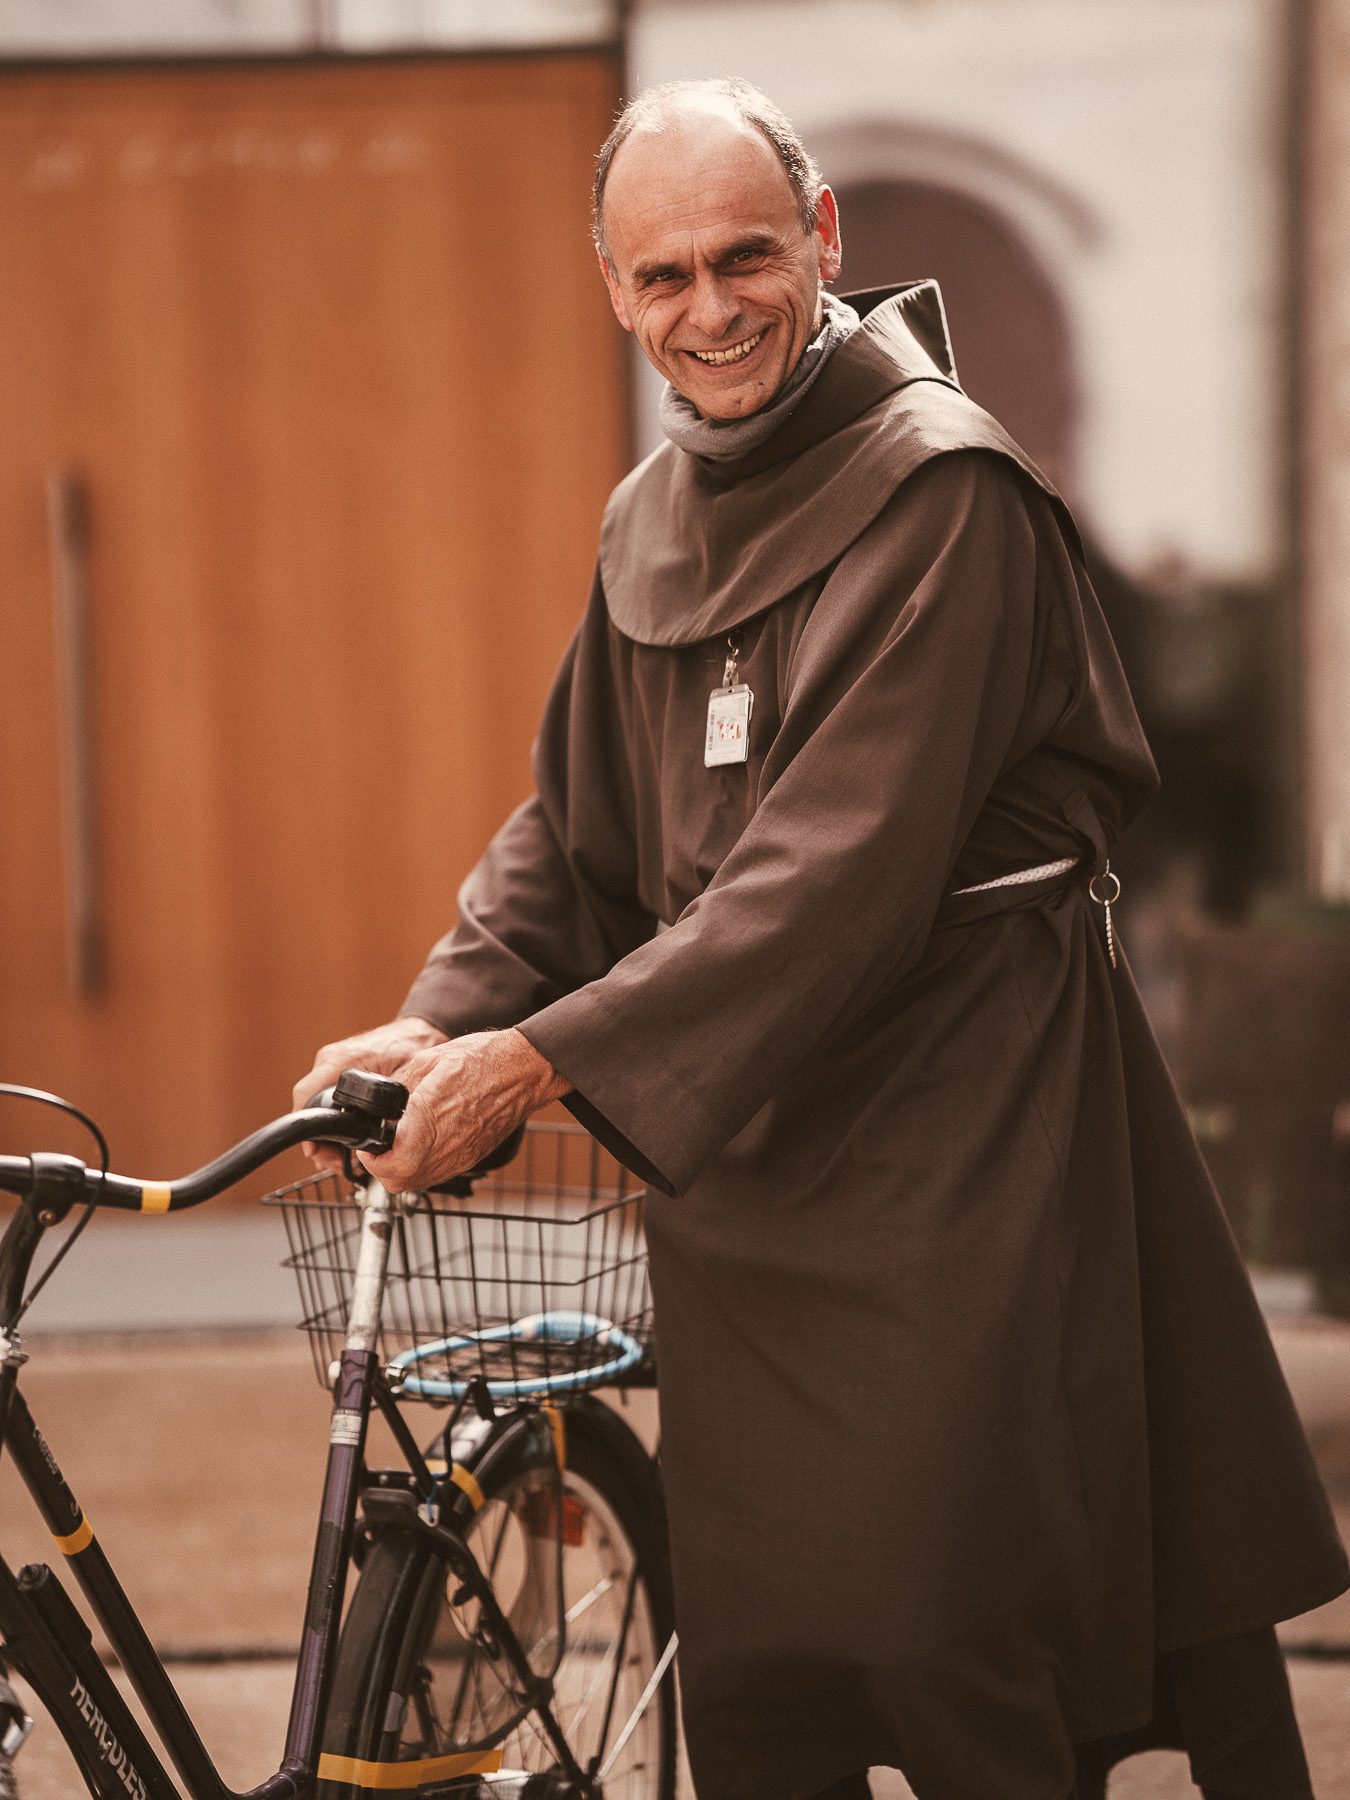 Franziskaner Bruder Salzburg mit Fahrrad